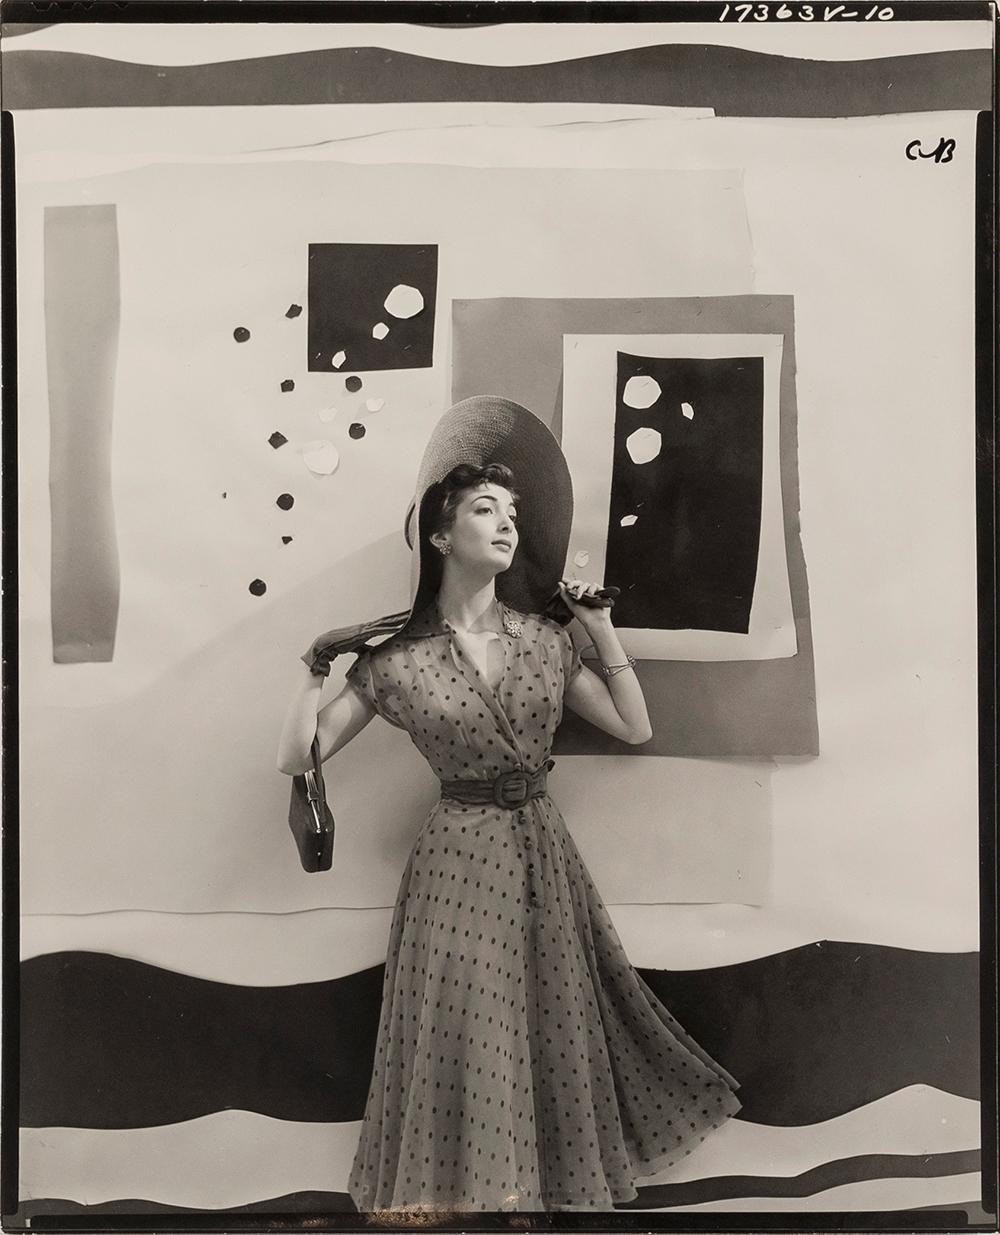 Carmen Dell'Orefice mit ausgeschnittenem Hintergrund für "Vogue", 1949 - Cecil Beaton
Beschriftet mit 'CB'
Gestempelt mit datiertem Tintenstempel von Conde Nast und Tintenstempel des Fotografen auf der Rückseite
Silbergelatineabzug, gedruckt 1949
9